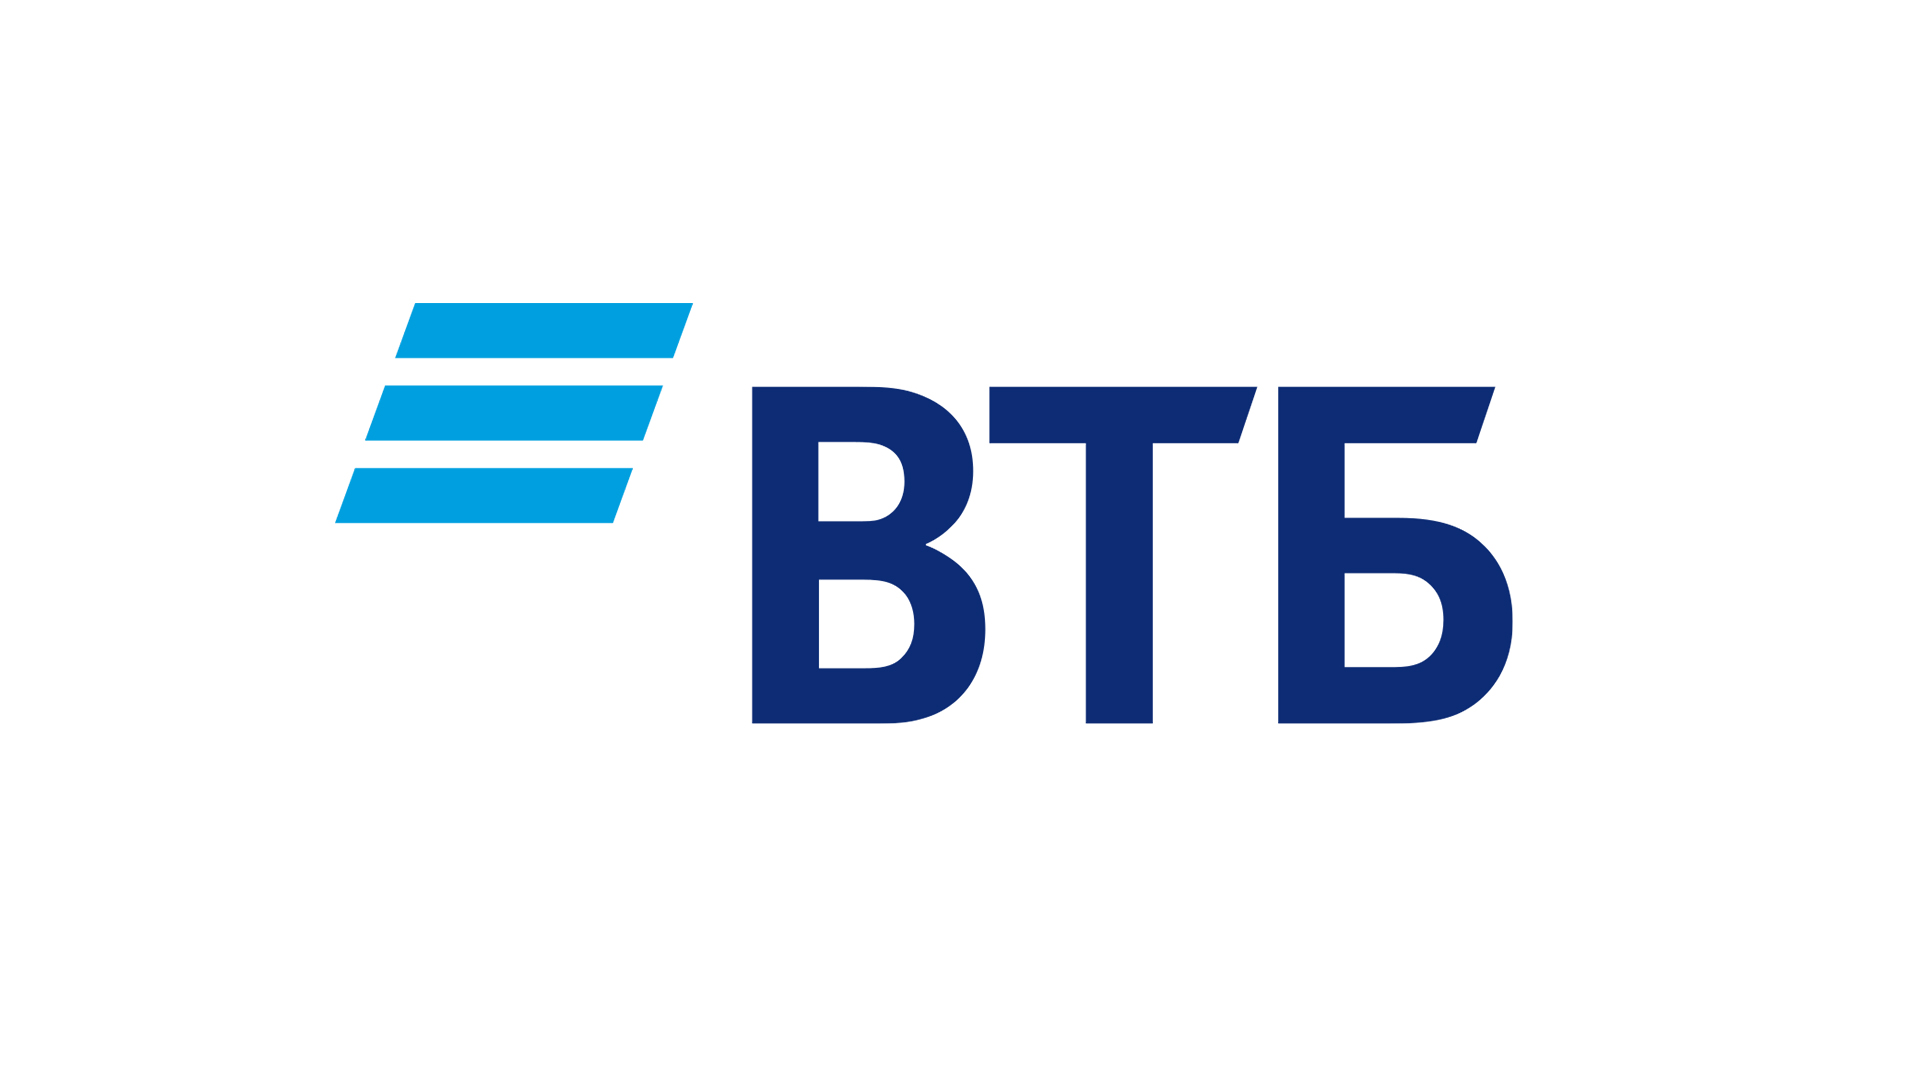 Глава ВТБ Андрей Костин представил 7 ключевых направлений развития финансового рынка России